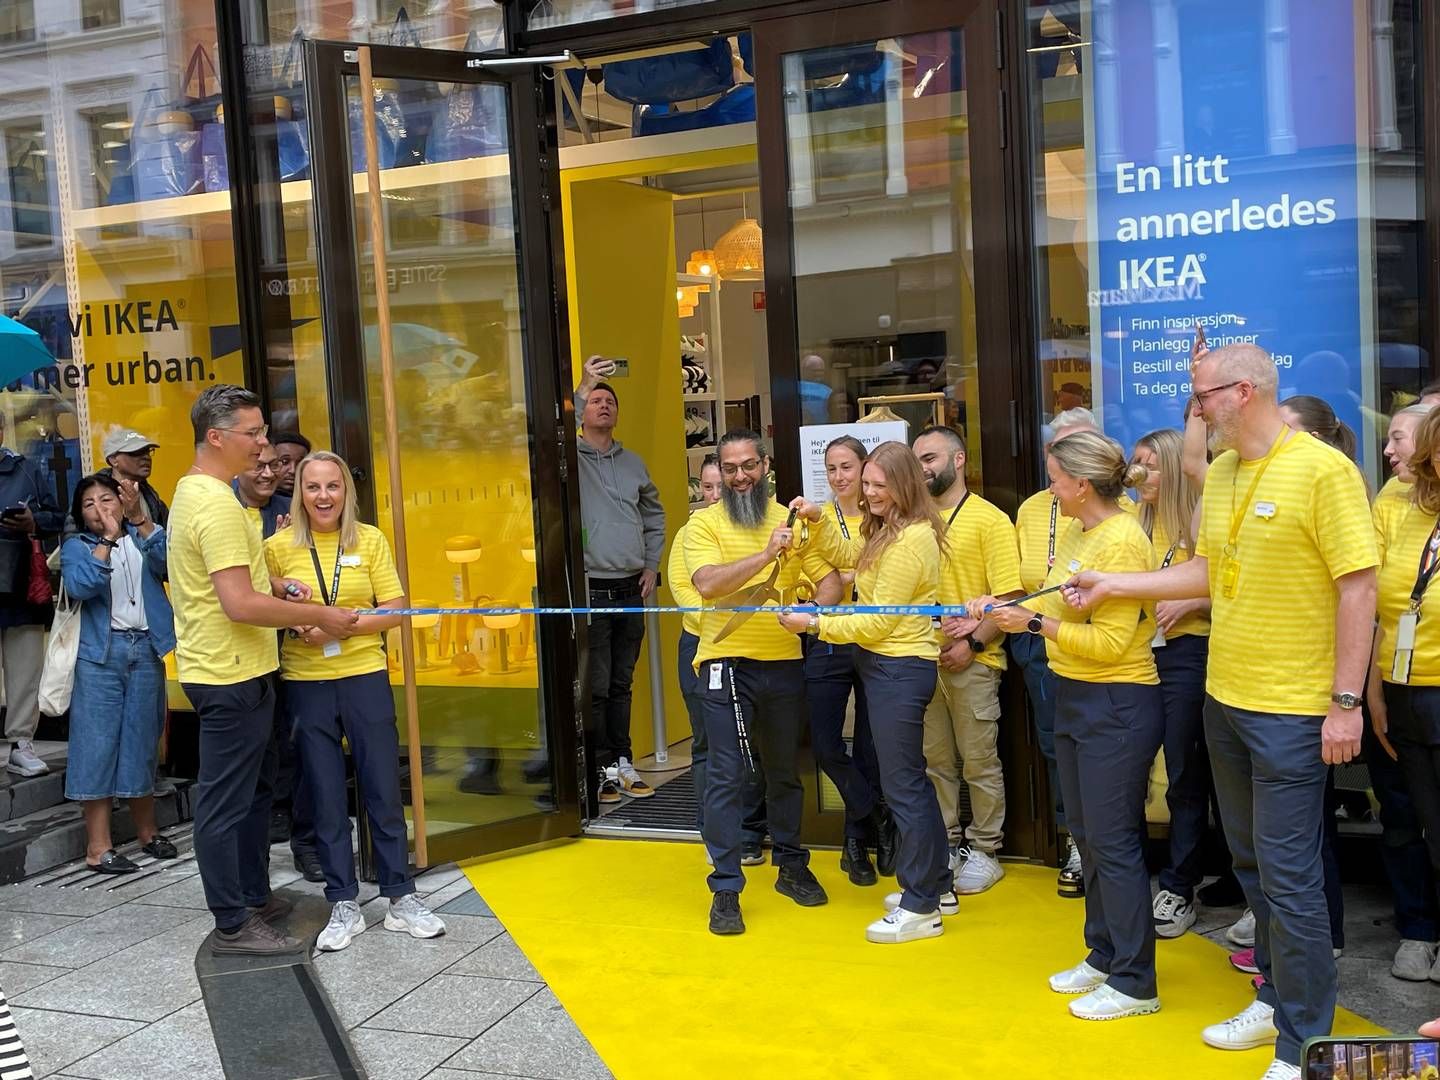 MULIG STREIK: Den nyåpnede Ikea-butikken på Karl Johan kan bli rammet av streik. | Foto: Fredrik Andersson/HandelsWatch